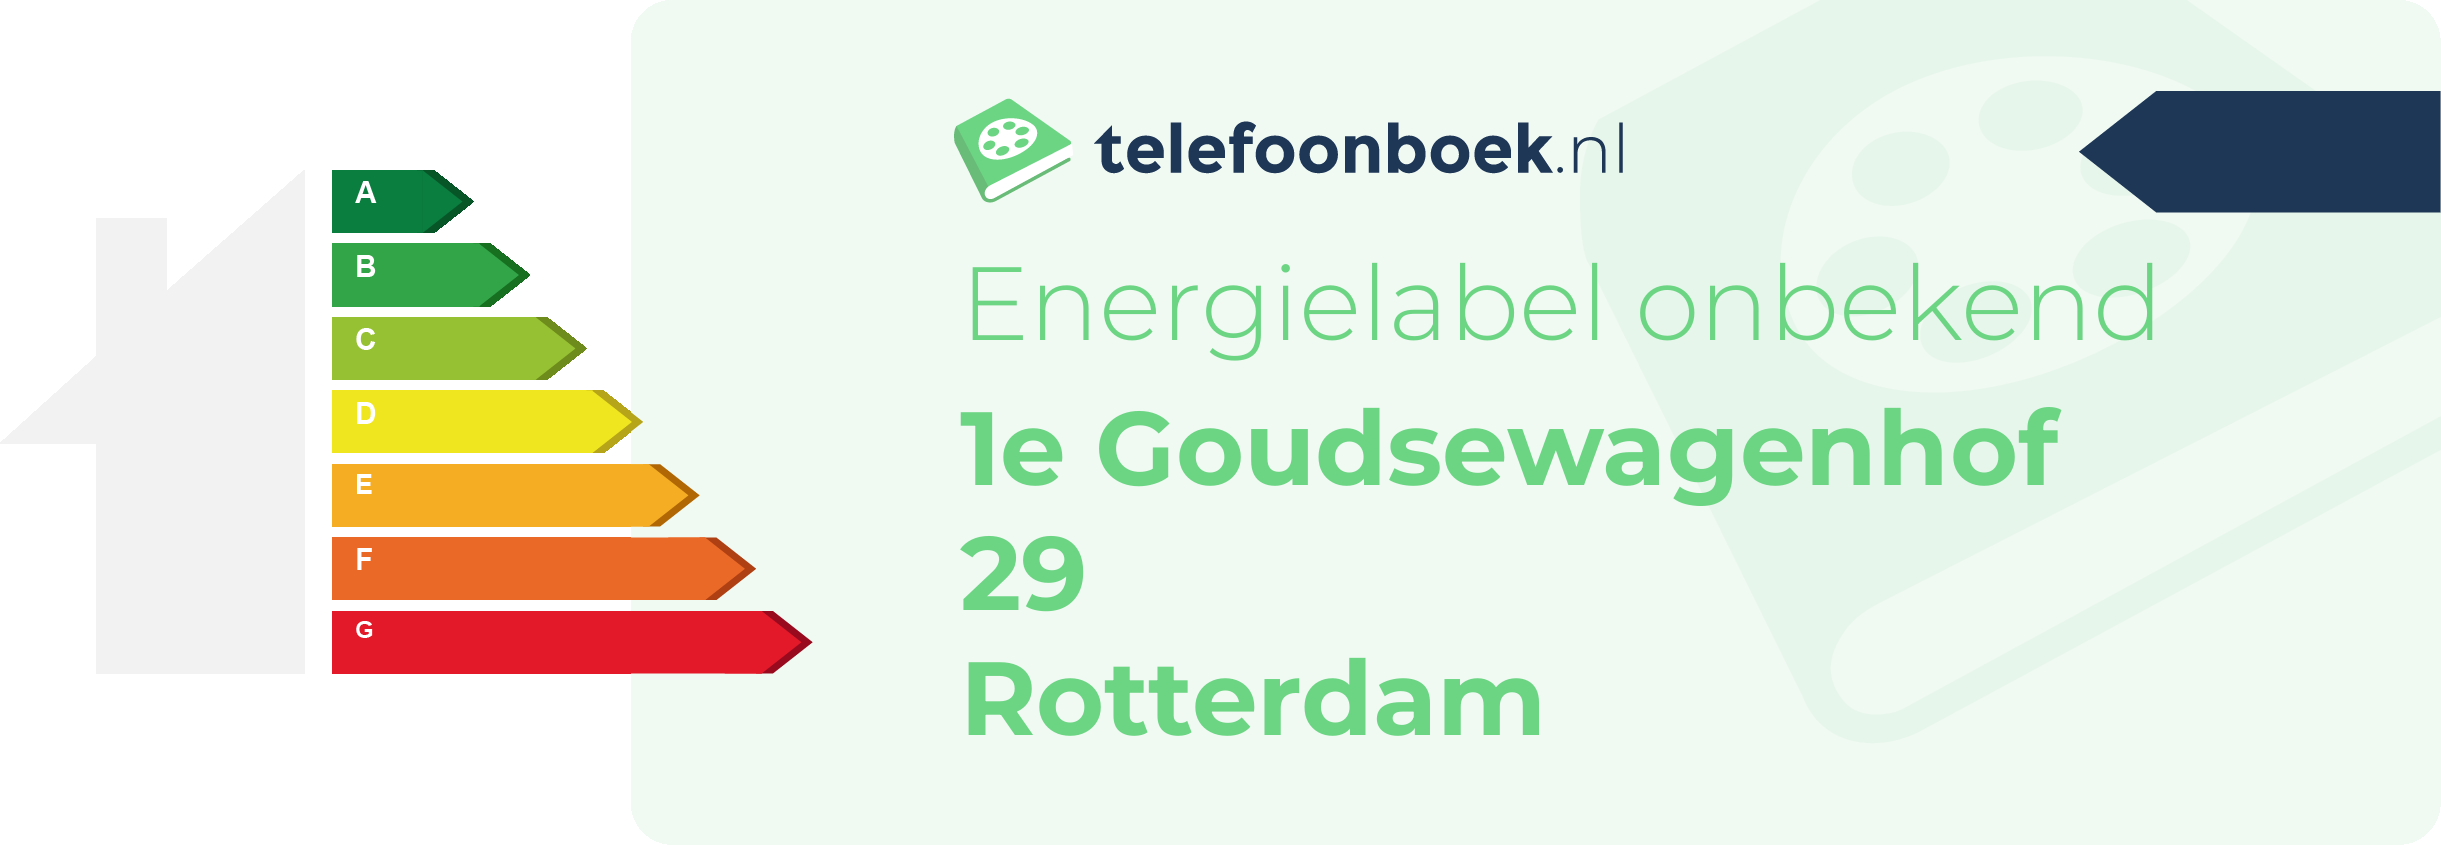 Energielabel 1e Goudsewagenhof 29 Rotterdam